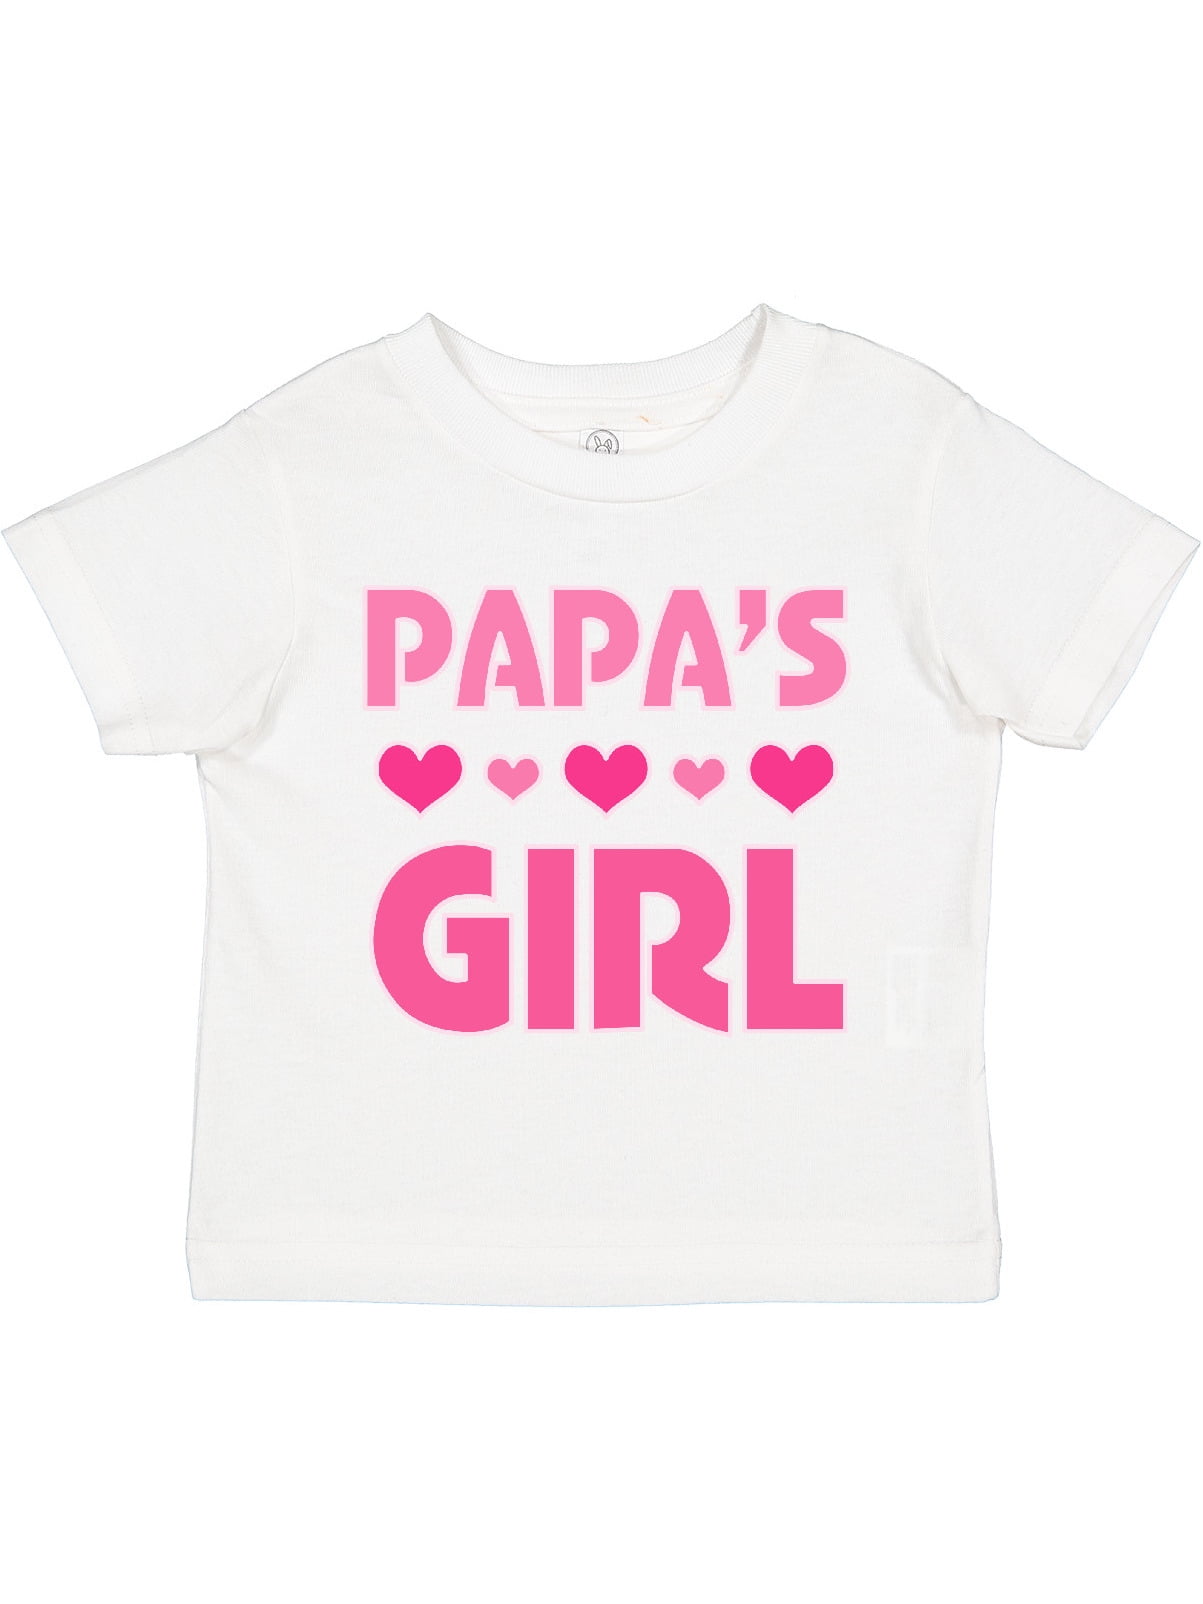 MSSMART Toddler Girls Summer T-Shirt Short Sleeve Top Tee 3-Pack Size 18M-7T 